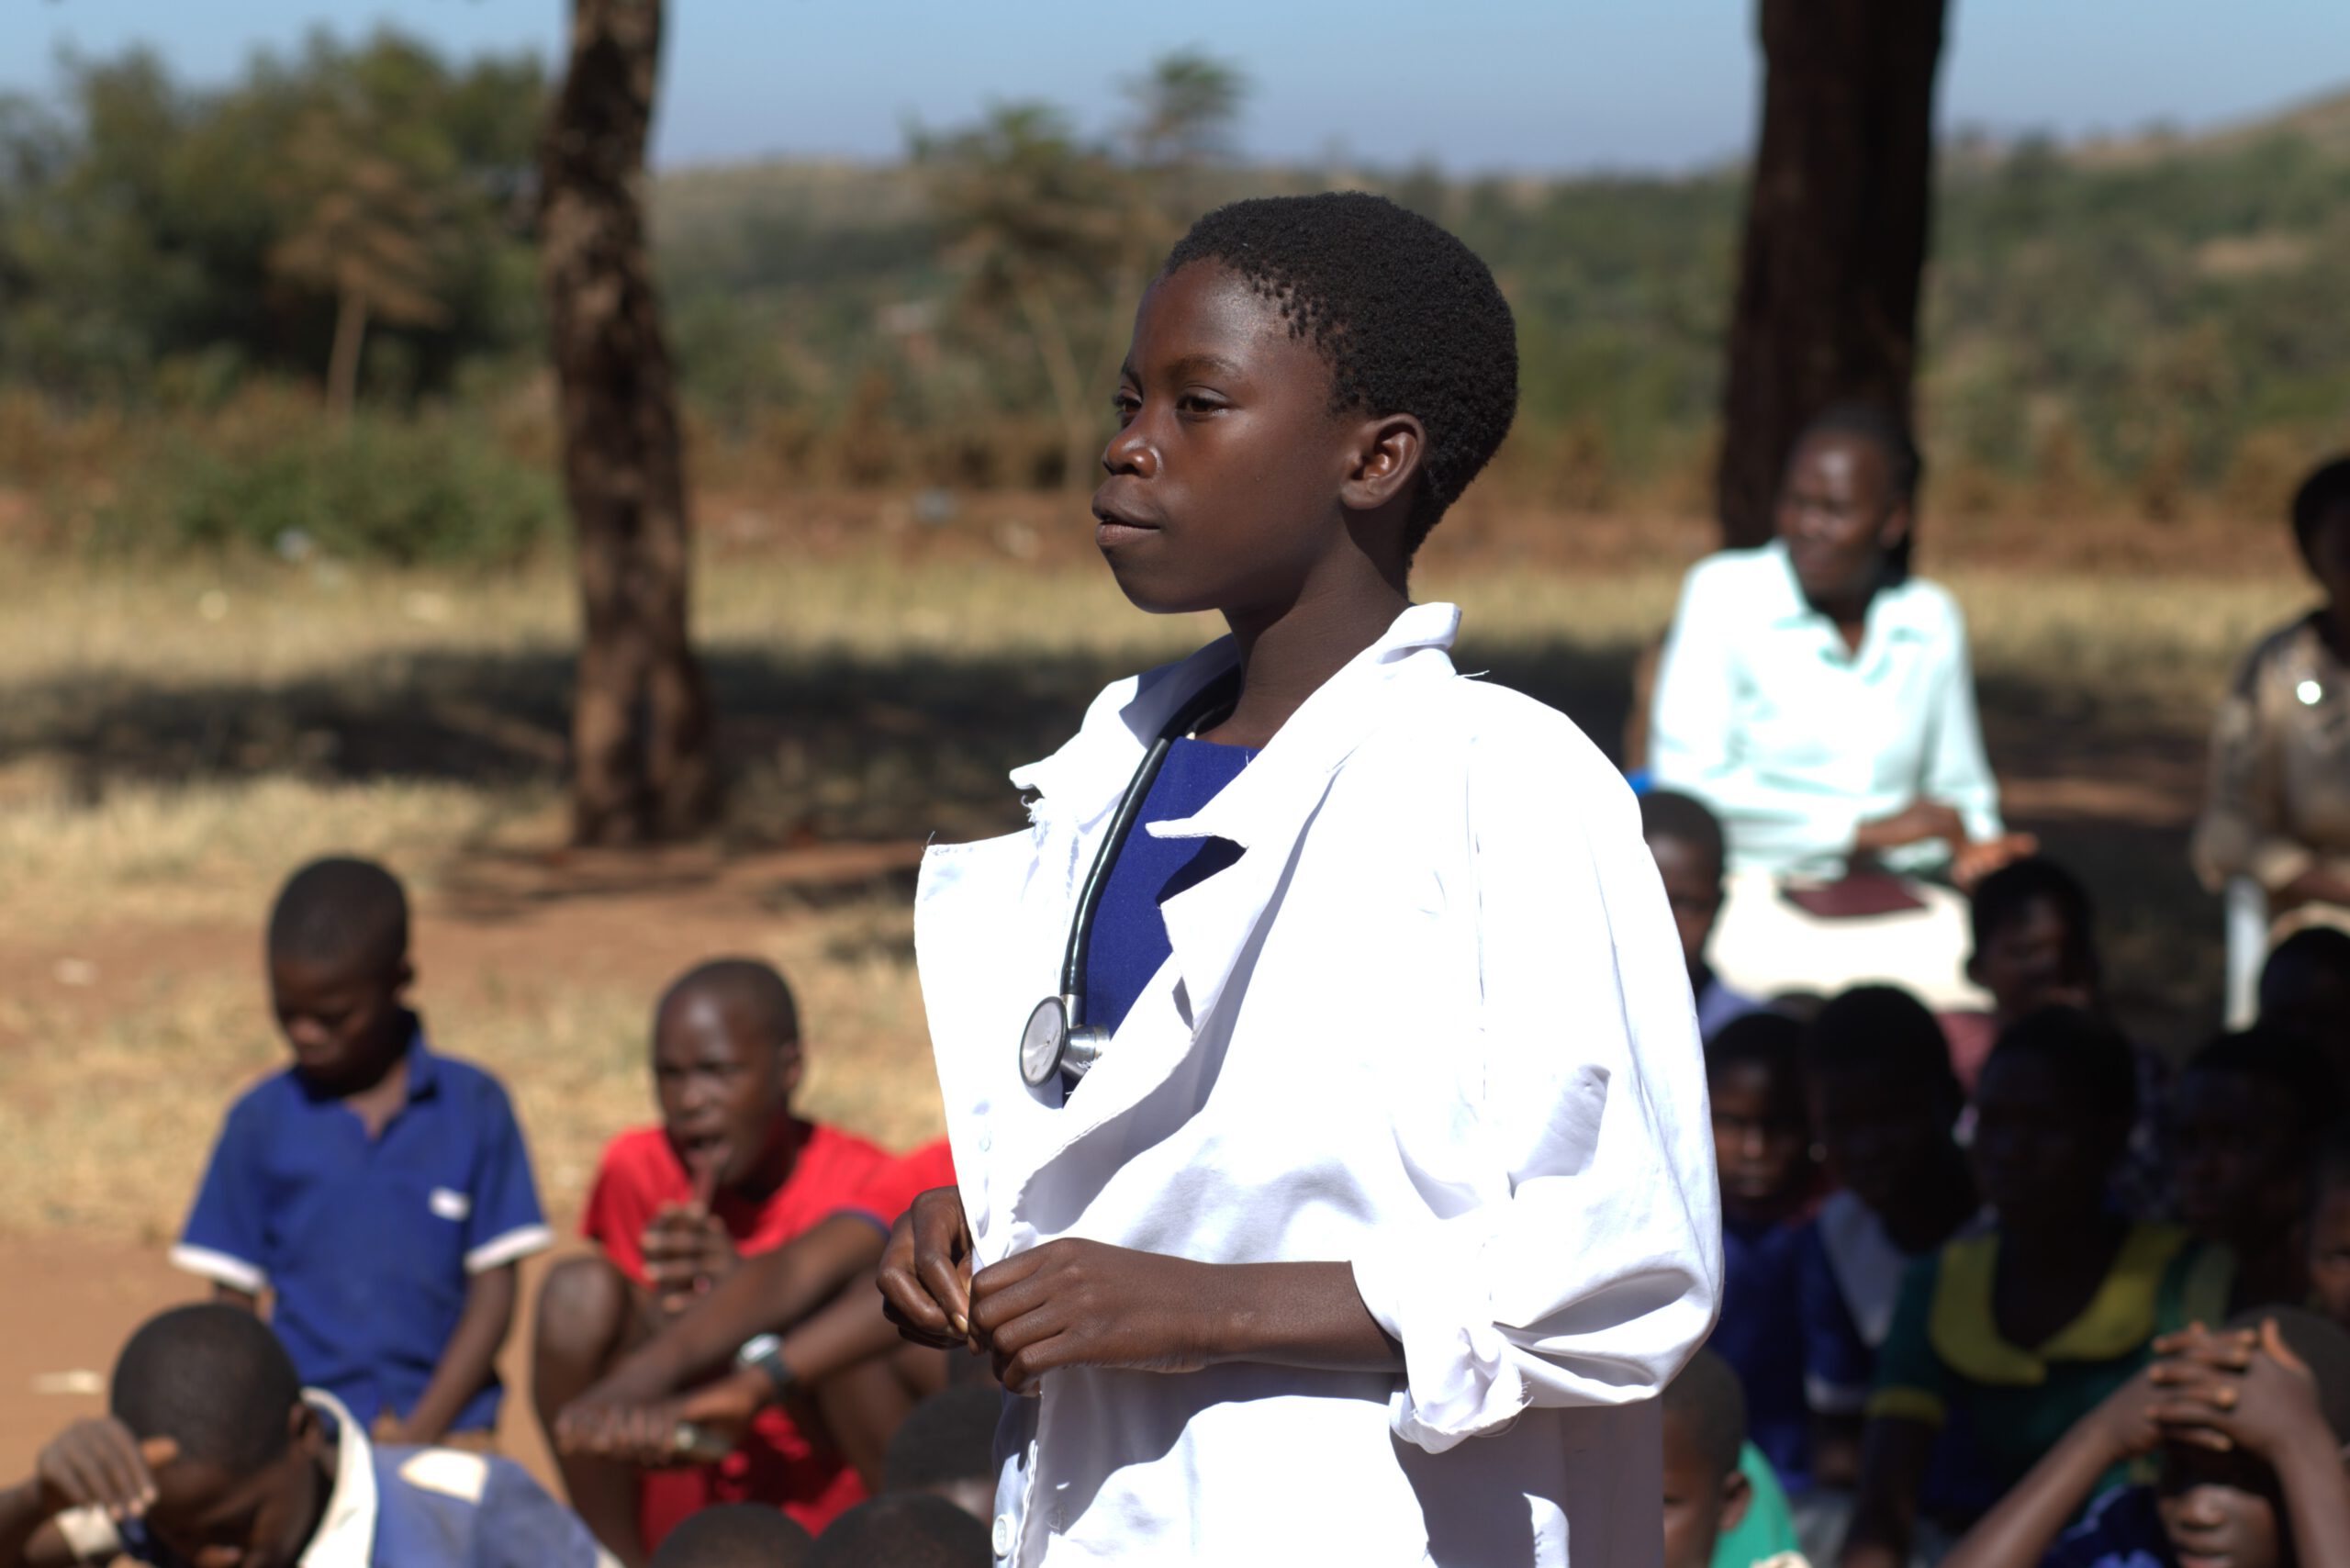 Edukans-NL-mentorschap-schooluitval-Malawi-onderwijs-Agnes-meisje